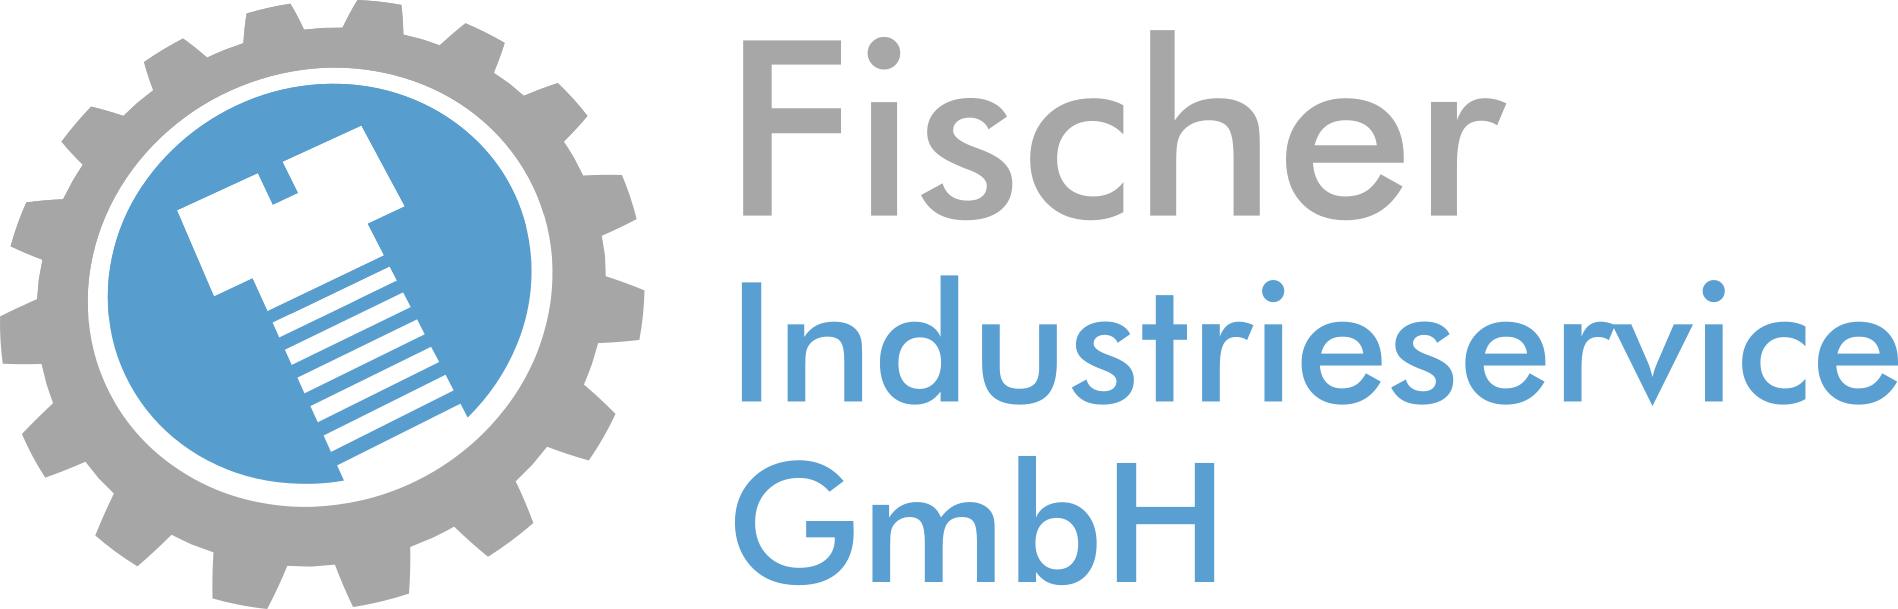 fischer-industrieservice